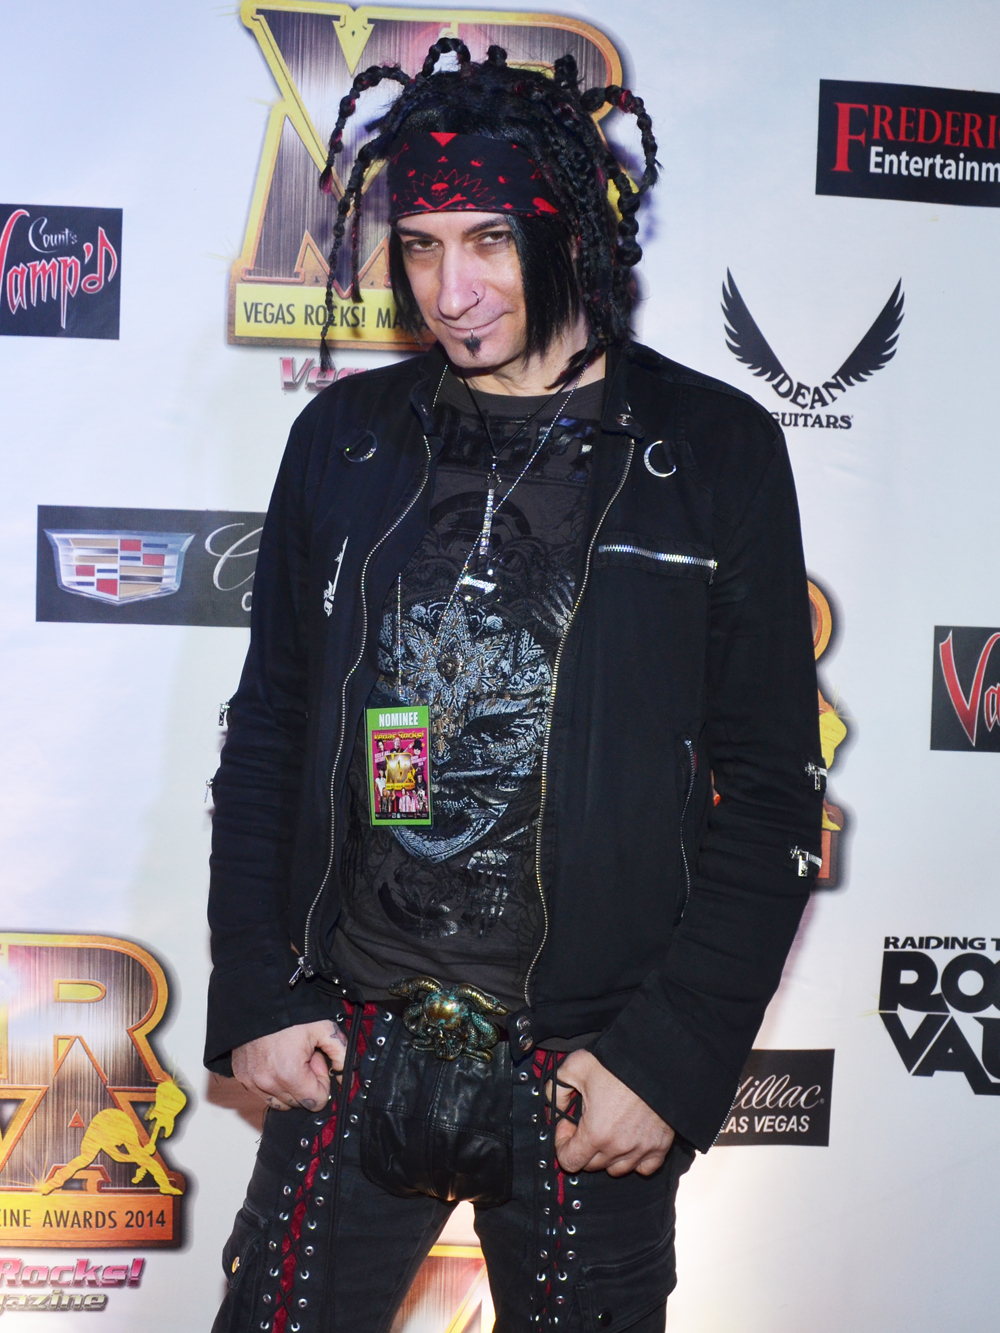 Mick James - Vegas Rocks Magazine Music Awards 2014 photo credit Stephen Thorburn 63683